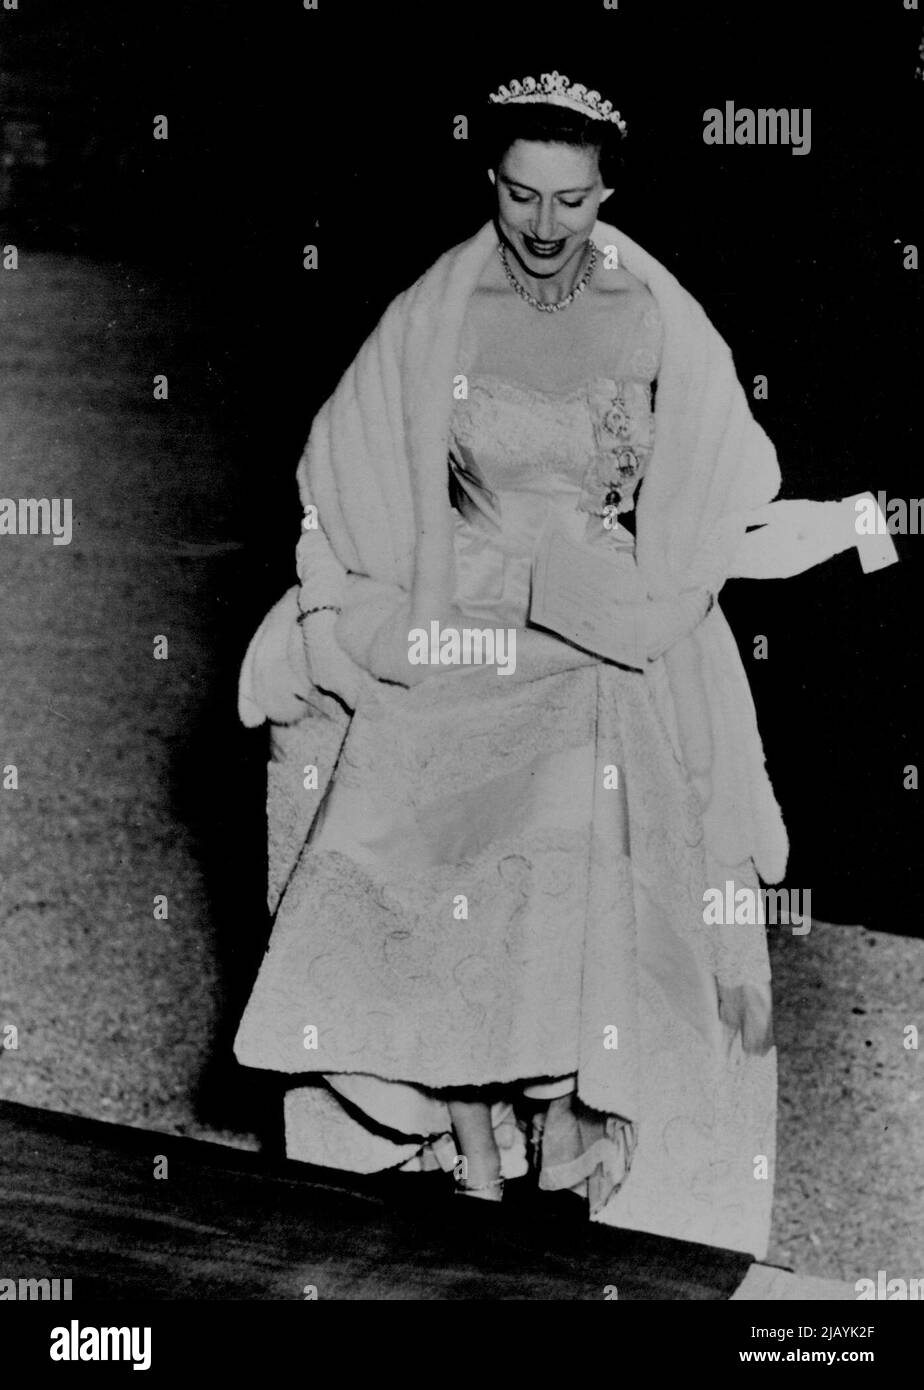 Prinzessin Margaret 25 - Ihre königliche Prinzessin Margaret wird am 21.. August 1955 25 Jahre alt. Dieses bisher unveröffentlichte Foto zeigt ihre königliche Hoheit, die in einem Abendkleid mit einer Ermine-Stola zu einer offiziellen Veranstaltung eintrifft. 23. August 1955. (Foto von Kamera Drücken Sie). Stockfoto